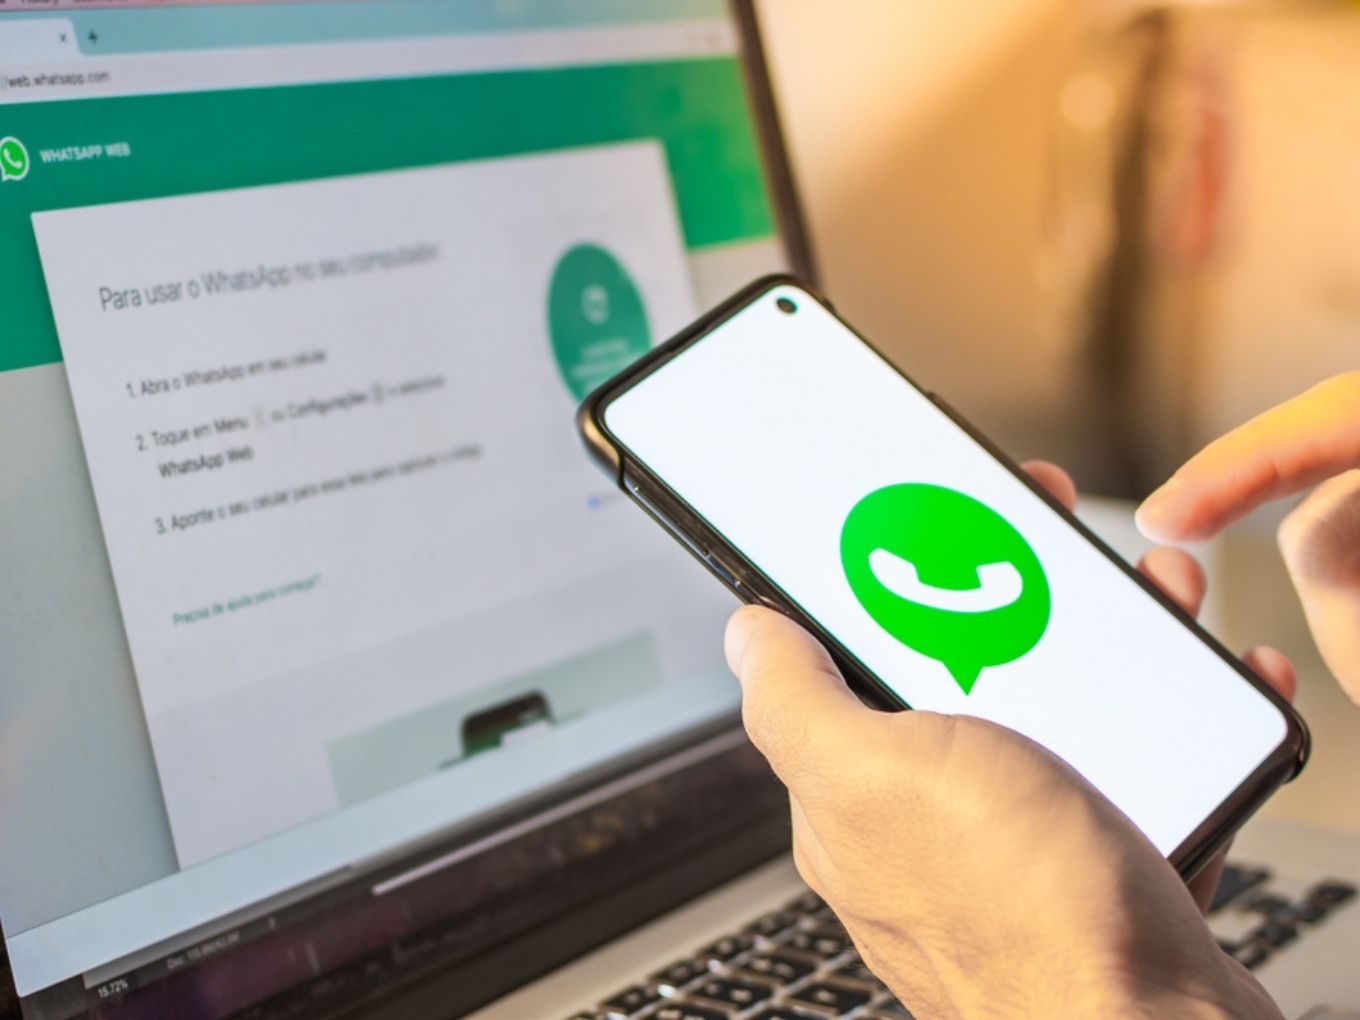 WhatsApp Calls CCI Probe Into Privacy Policy A ‘Headline-Grabbing Endeavour’